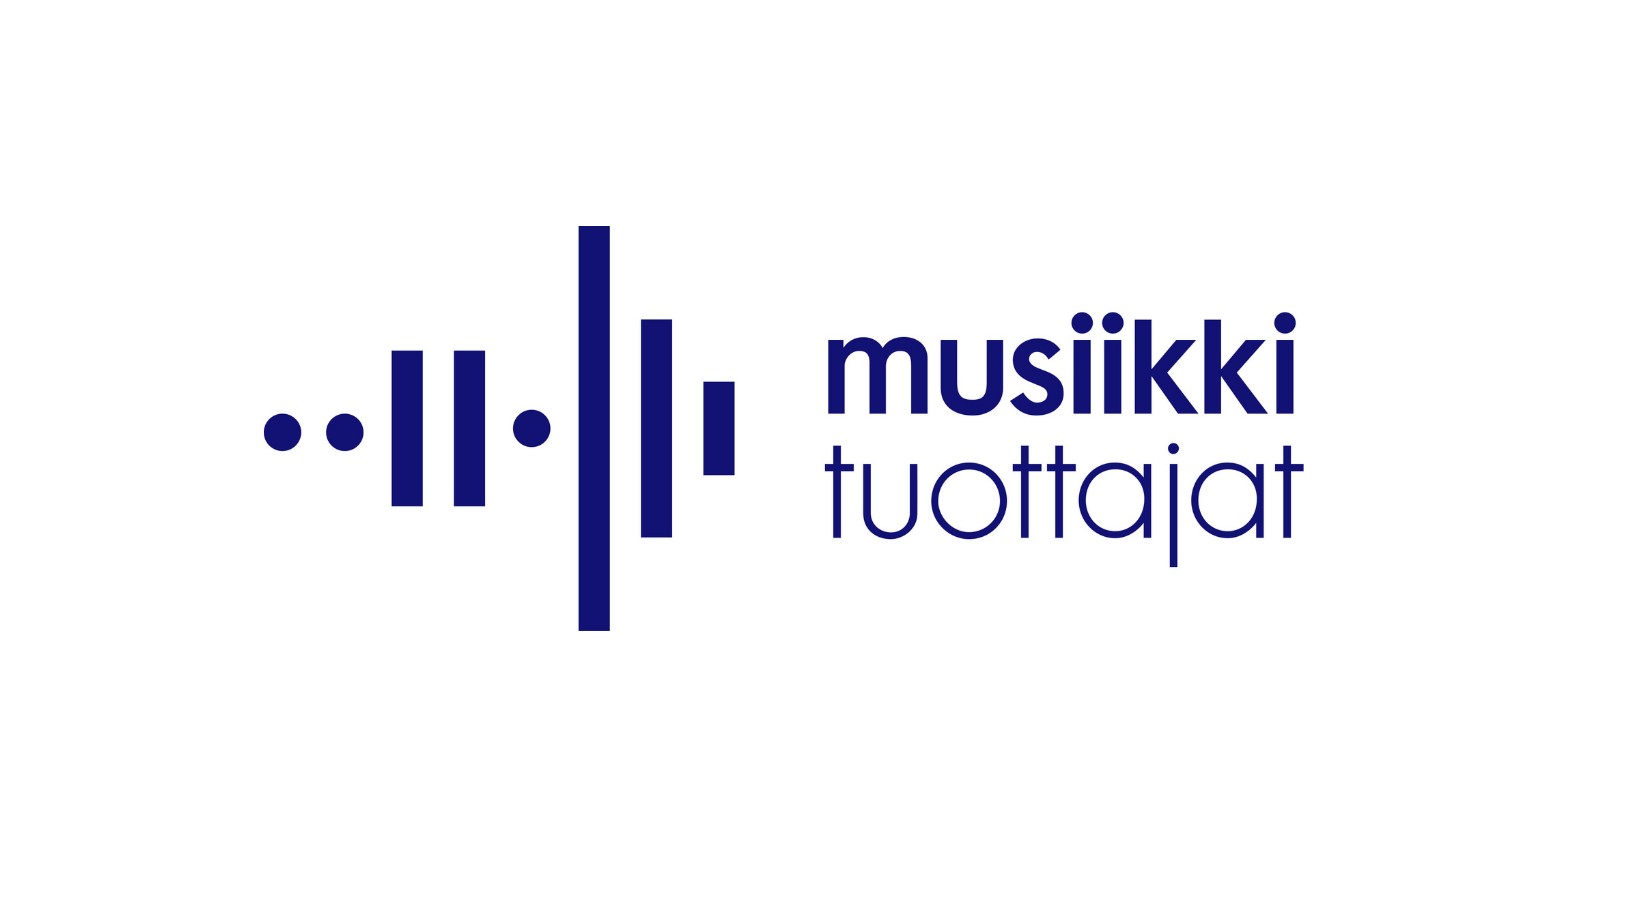 Musiikkituottajat - IFPI Finland ry | LinkedIn